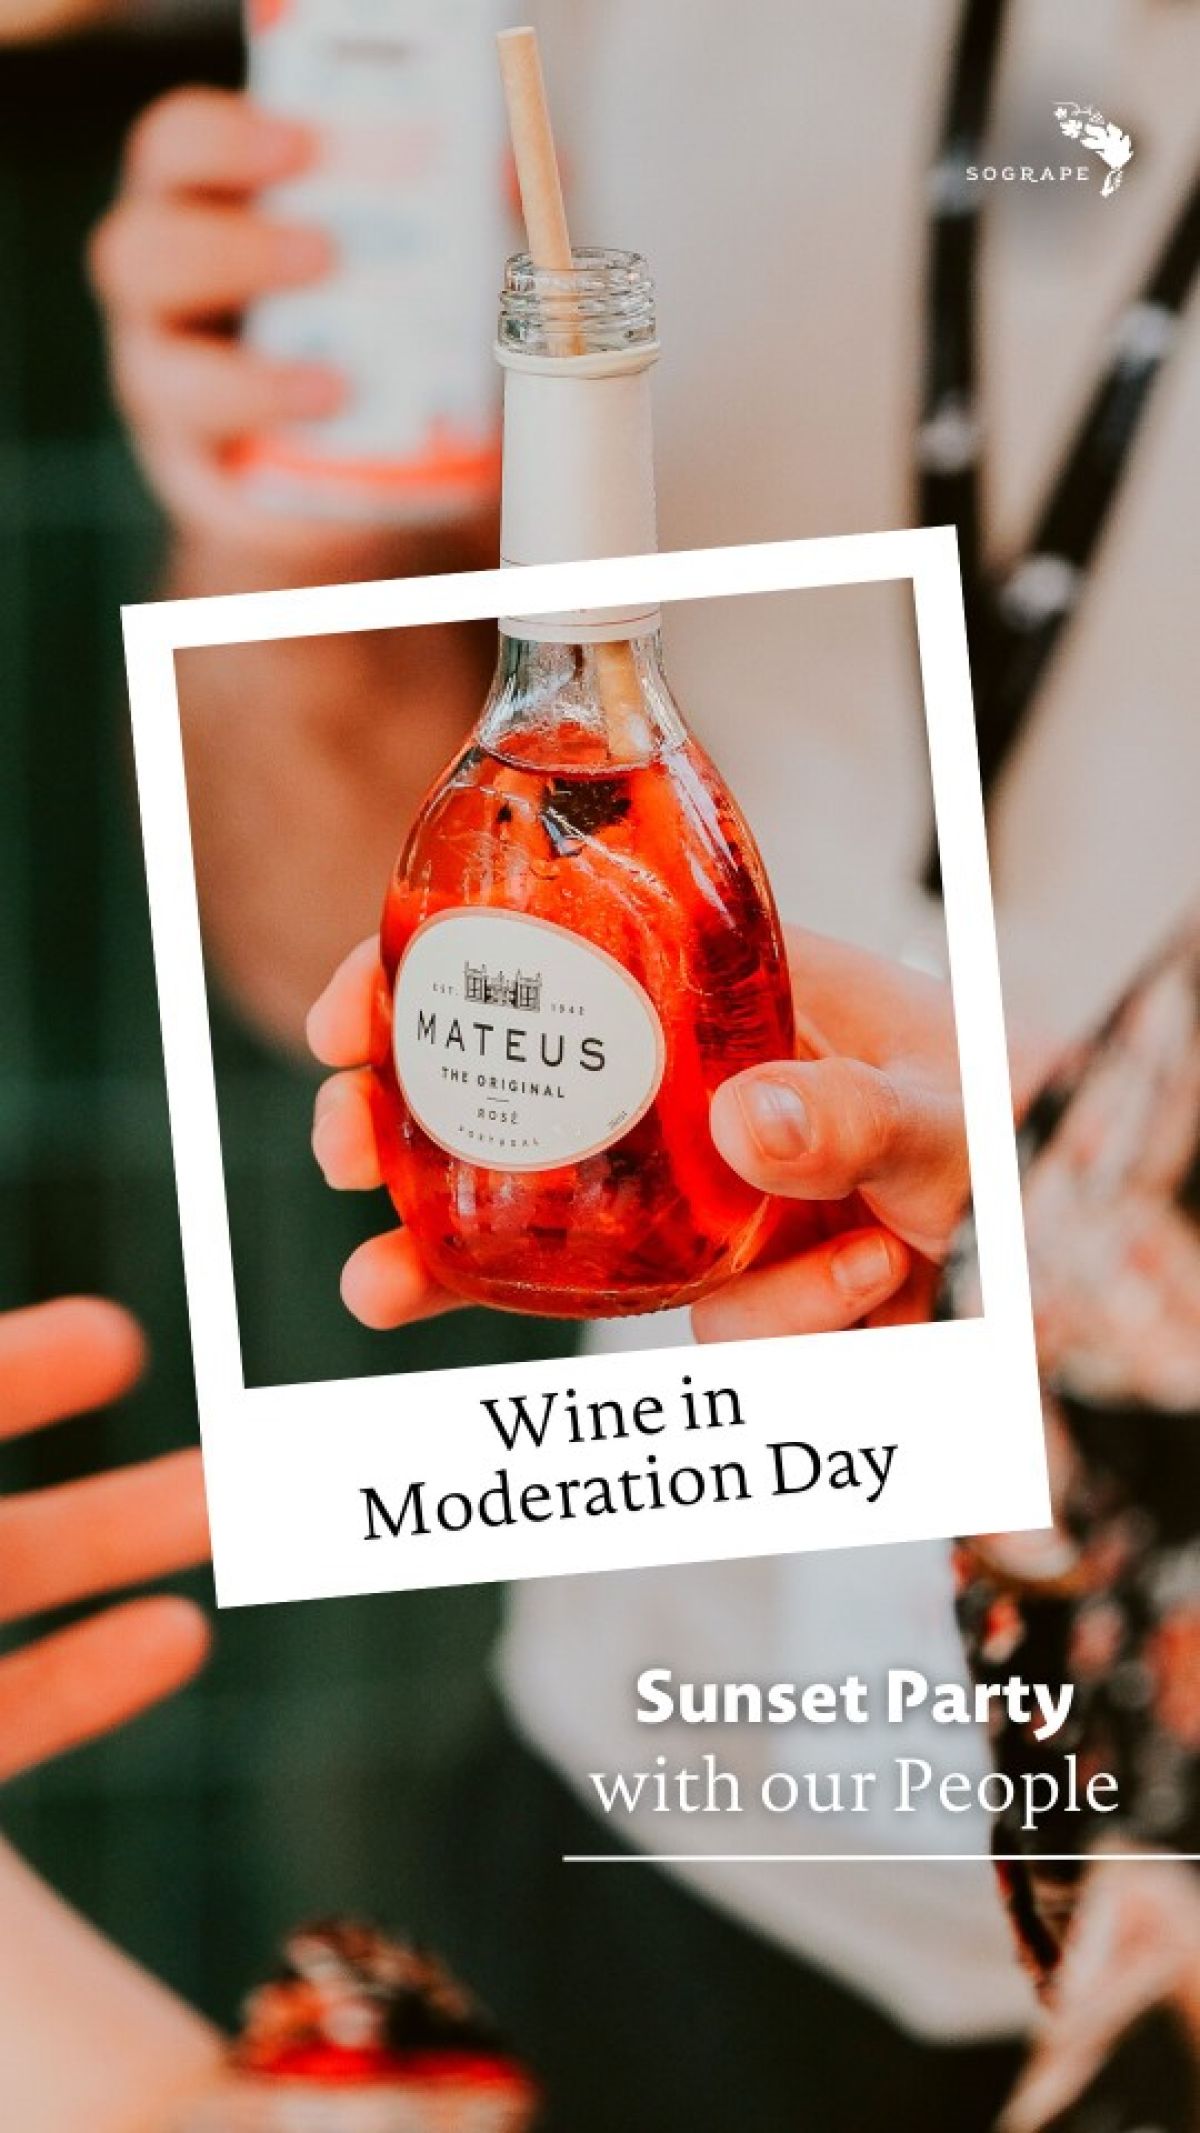 Escolha. Partilhe. Cuide. Dia Vinho com Moderação, um dia dedicado ao convívio, bem-estar e cultura vínica.